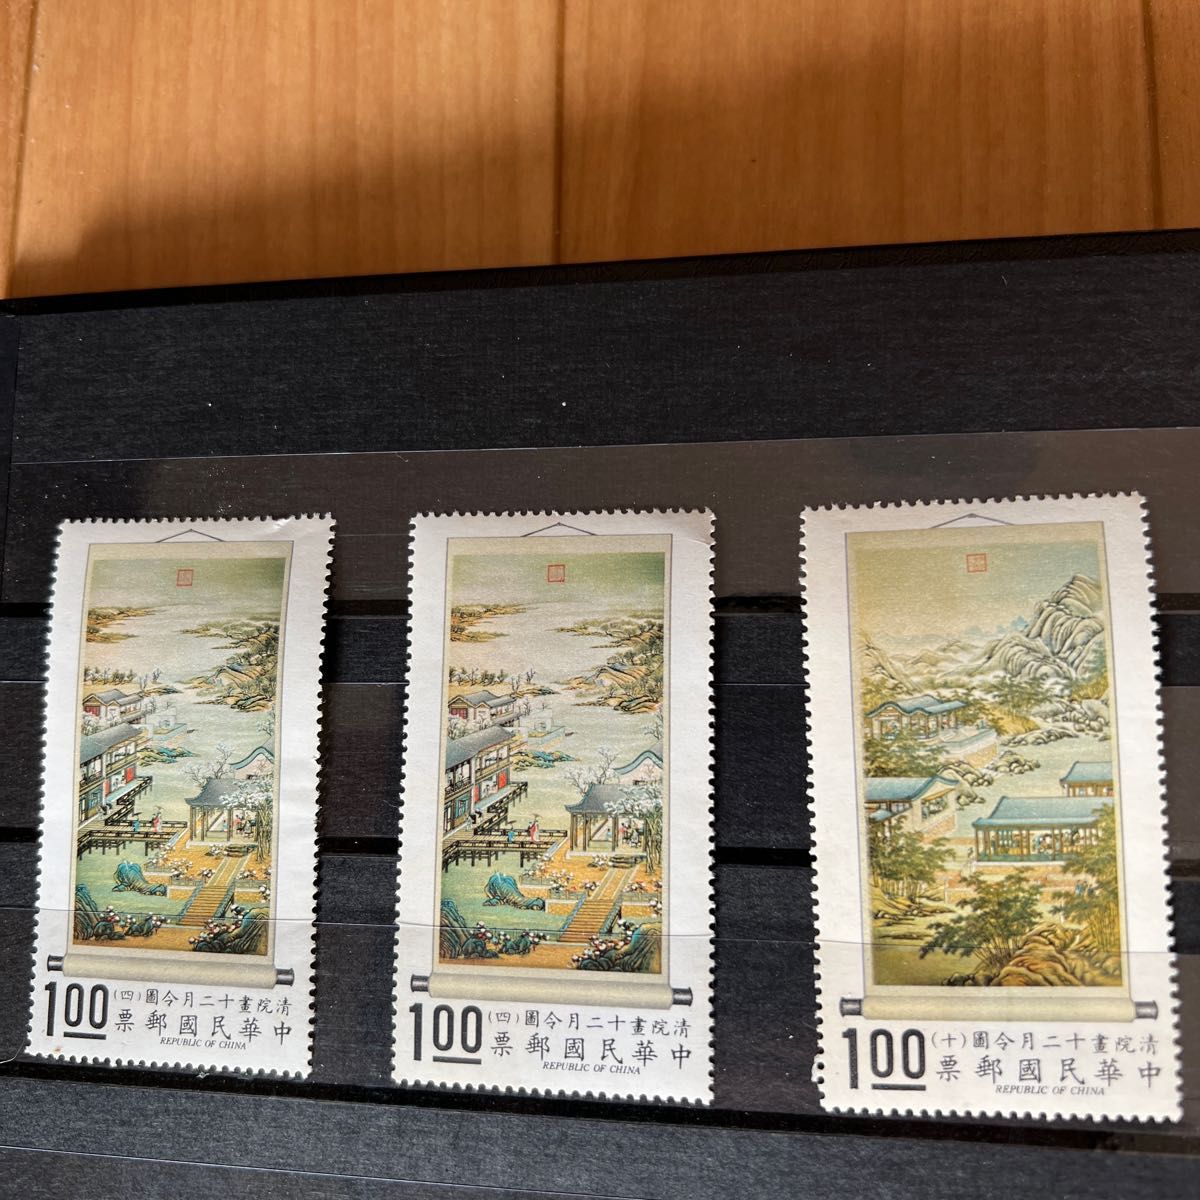 中華民国郵便切手　清院書十二月令図古画郵票 台湾観光記念